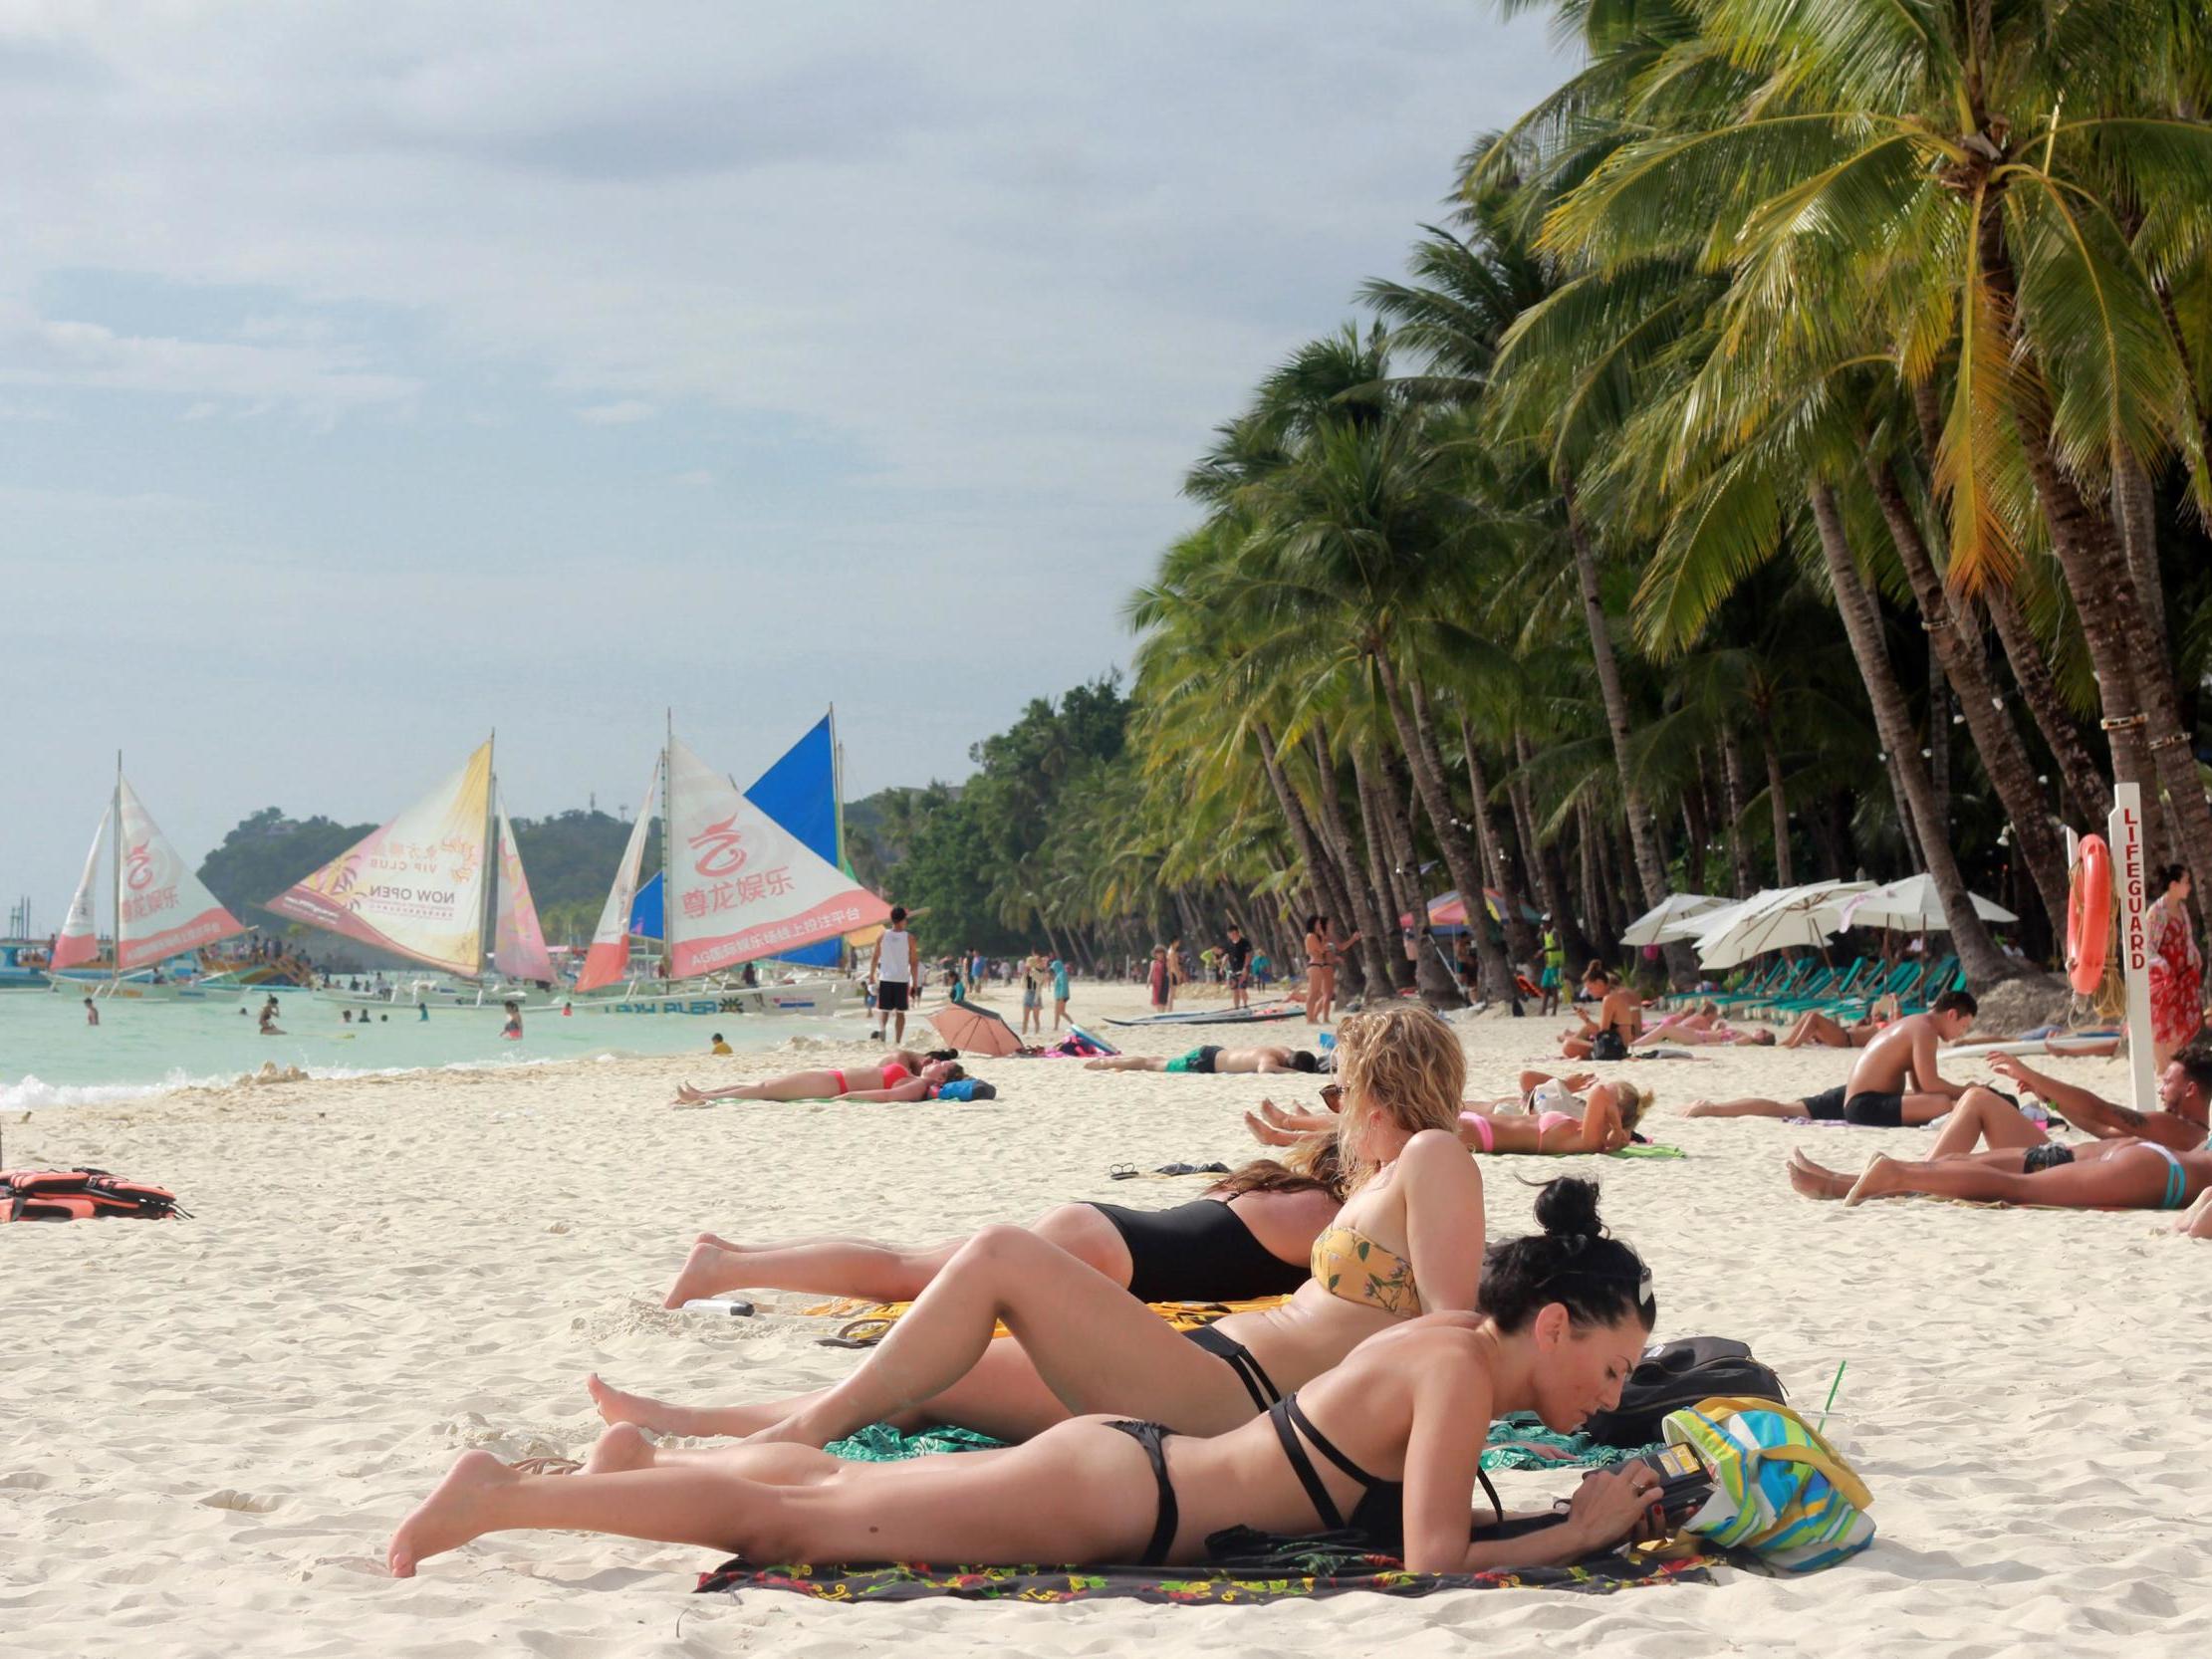 Beach bikini community tanning type